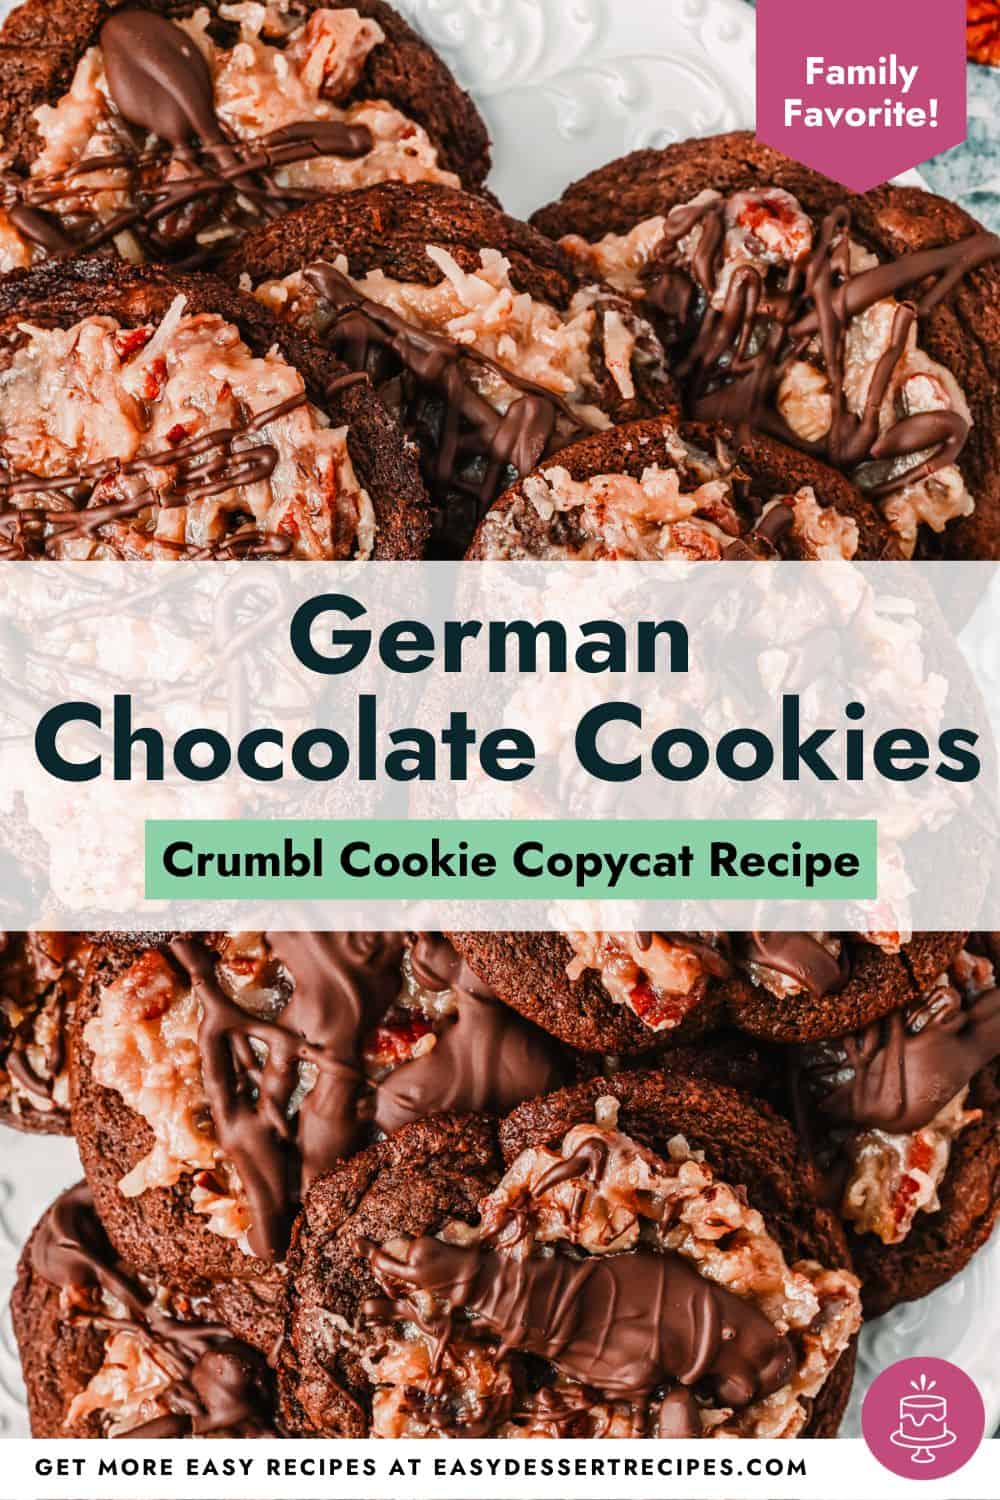 German chocolate cake cookies pinterest